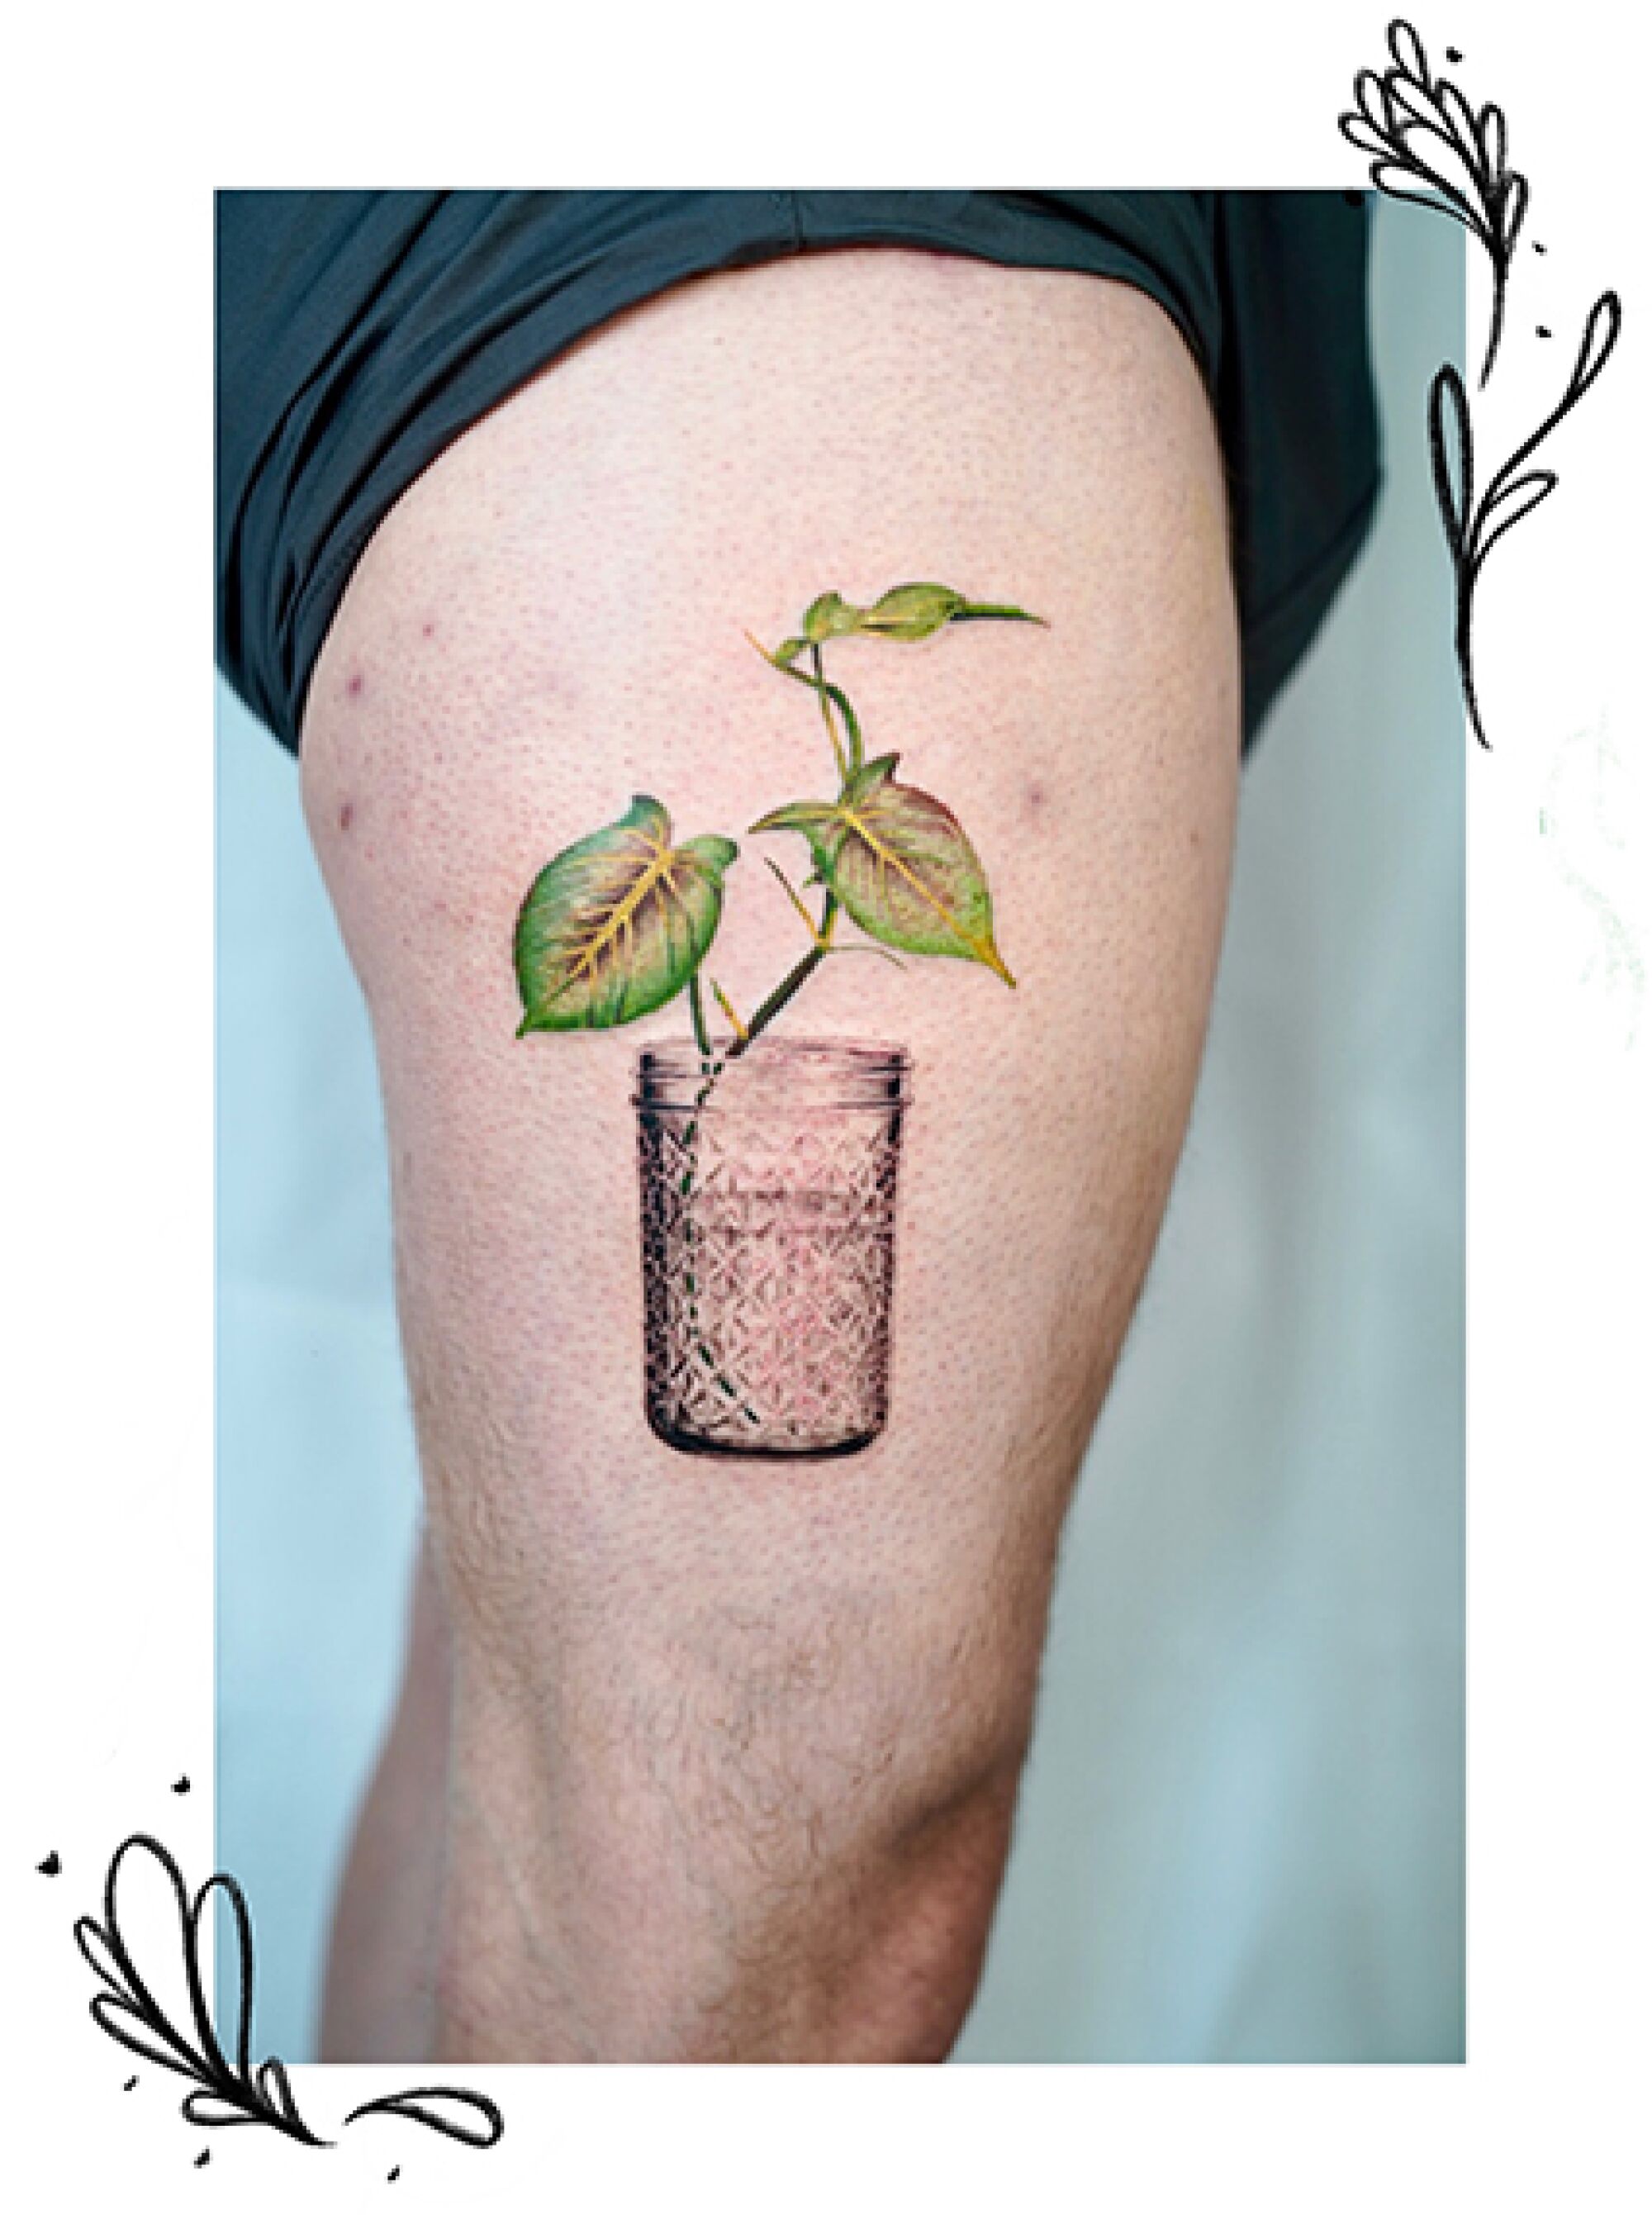 A plant tattoo on a leg.